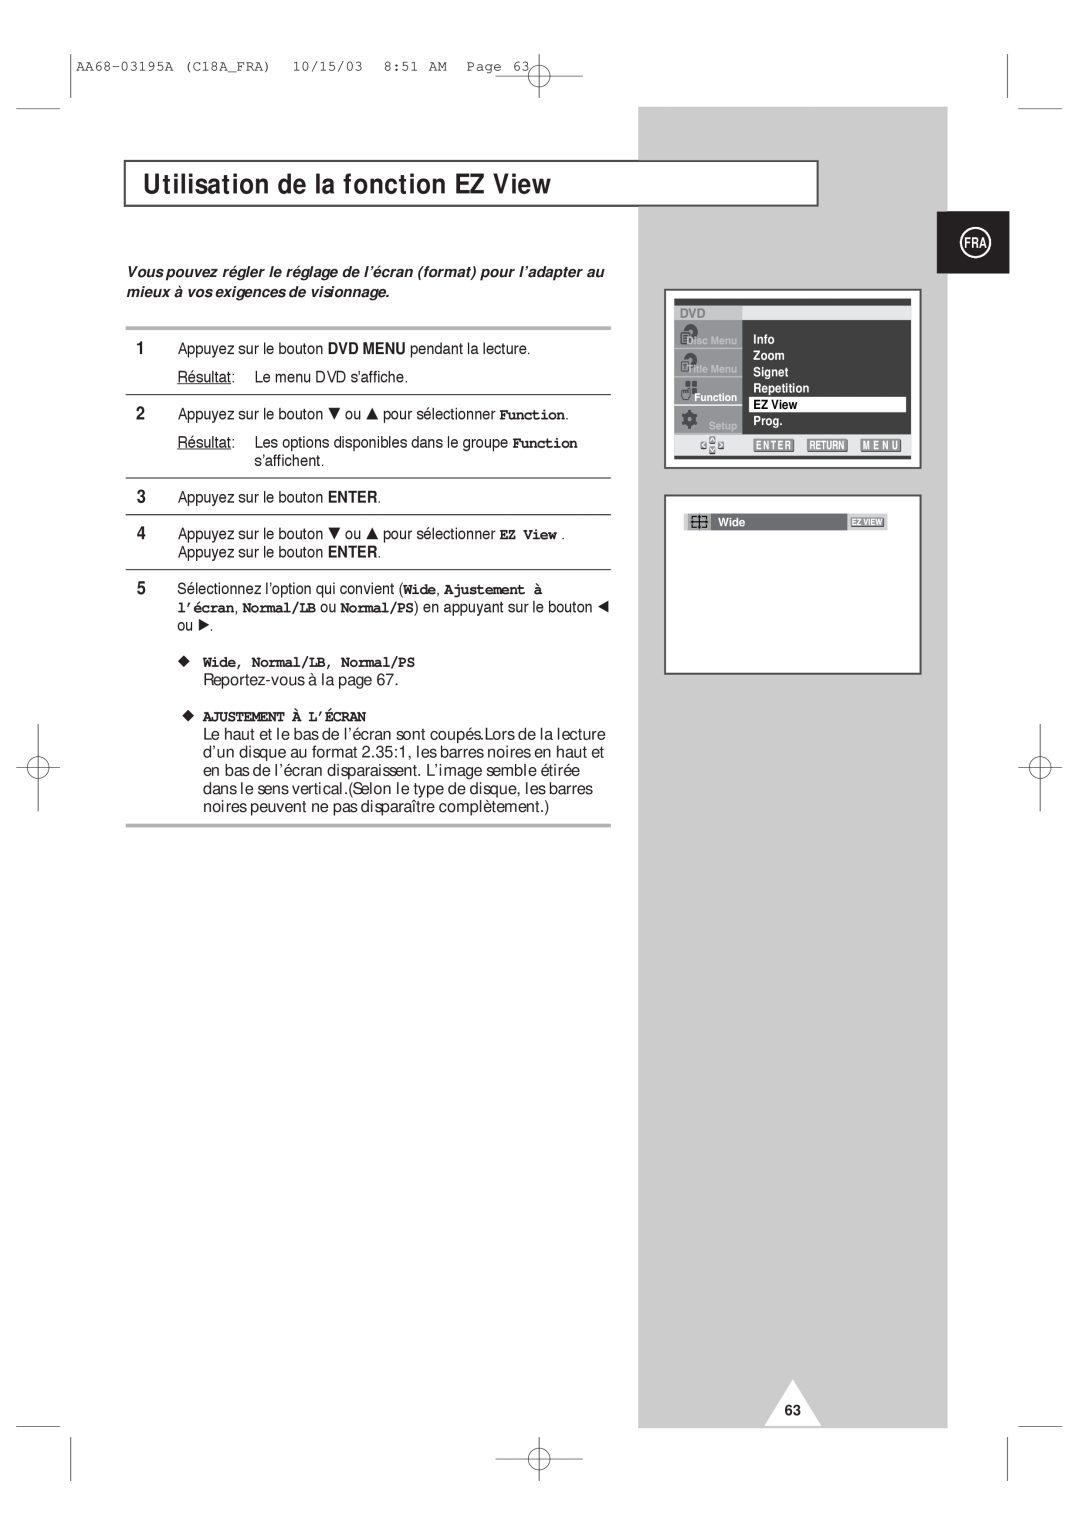 Samsung UW17J11VD5XXEF manual Utilisation de la fonction EZ View, Wide, Normal/LB, Normal/PS, Reportez-vous à la page 